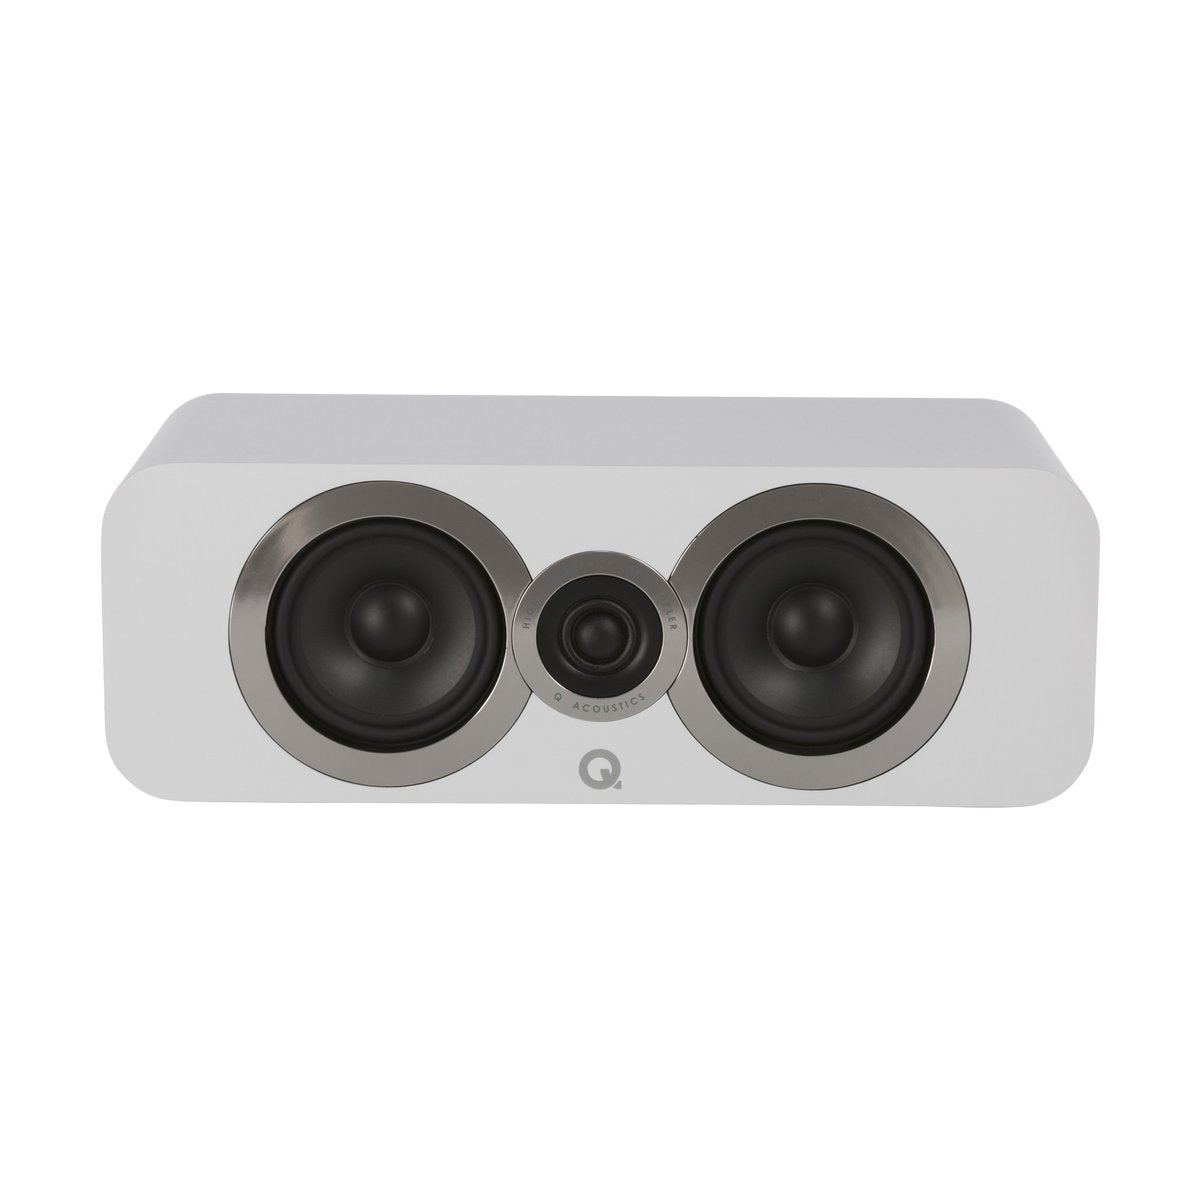 Q Acoustics 3090i Center Speaker